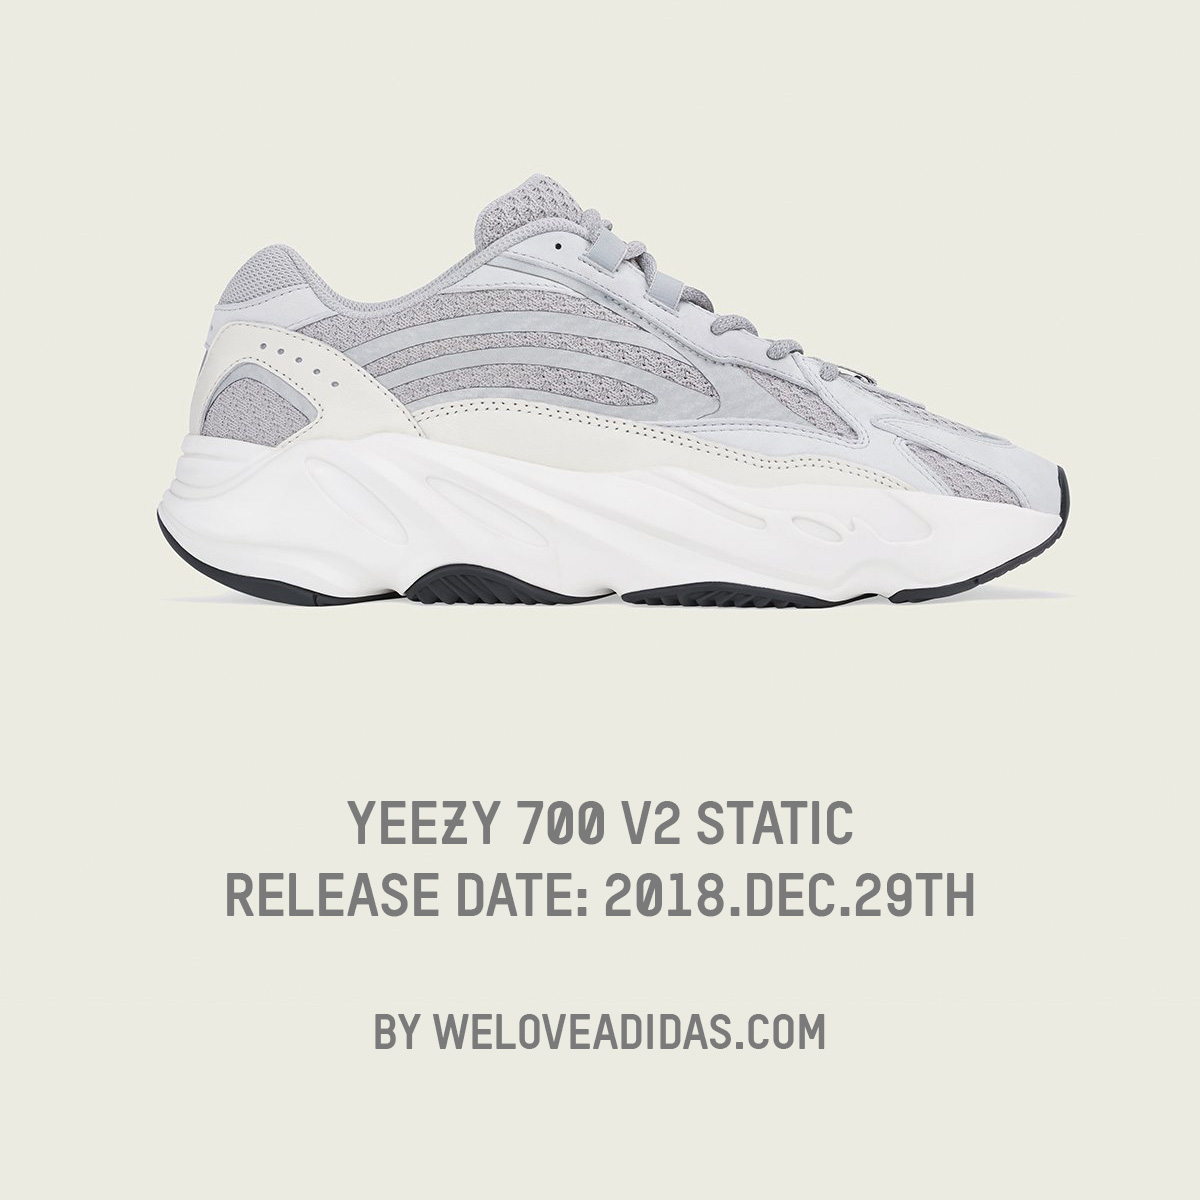 이지 부스트 700 스태틱, 12월 29일 발매(Yeezy Boost 700 Static release on december 29th)